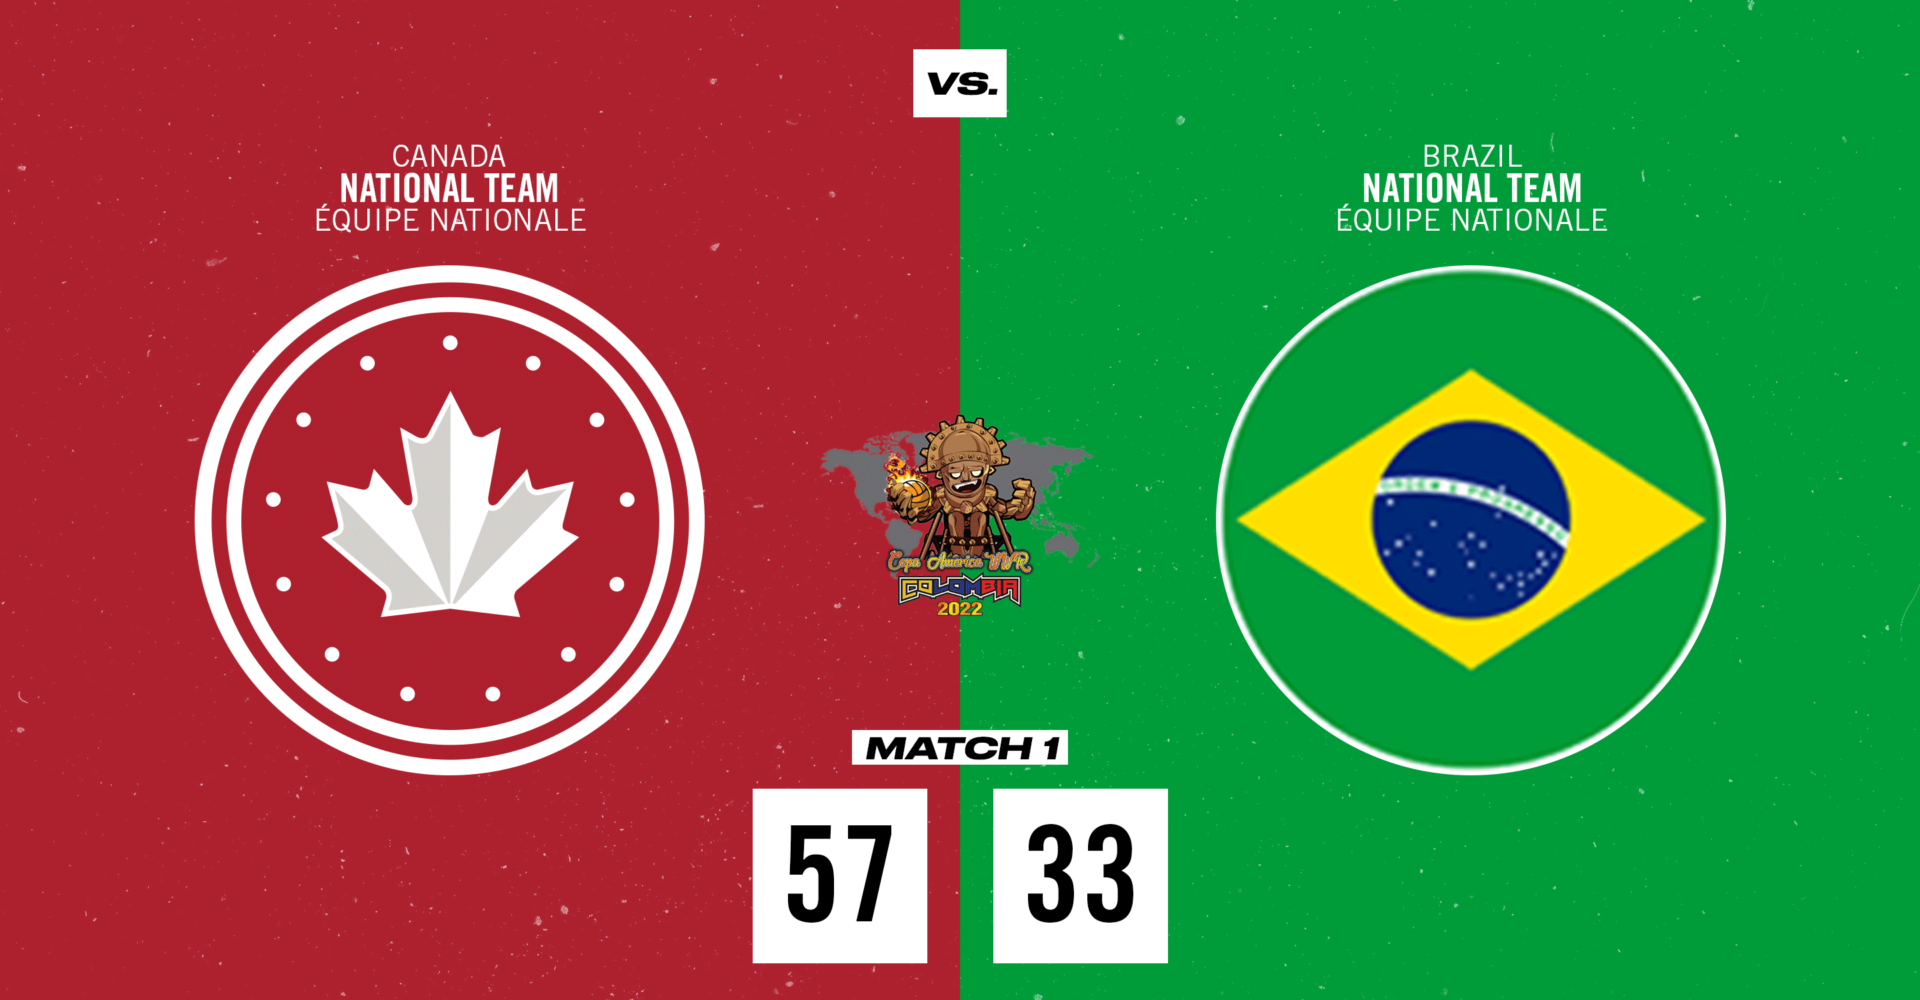 Le Canada bat le Brésil 57 à 33 lors du match d’ouverture du Championnat de la WWR Americas